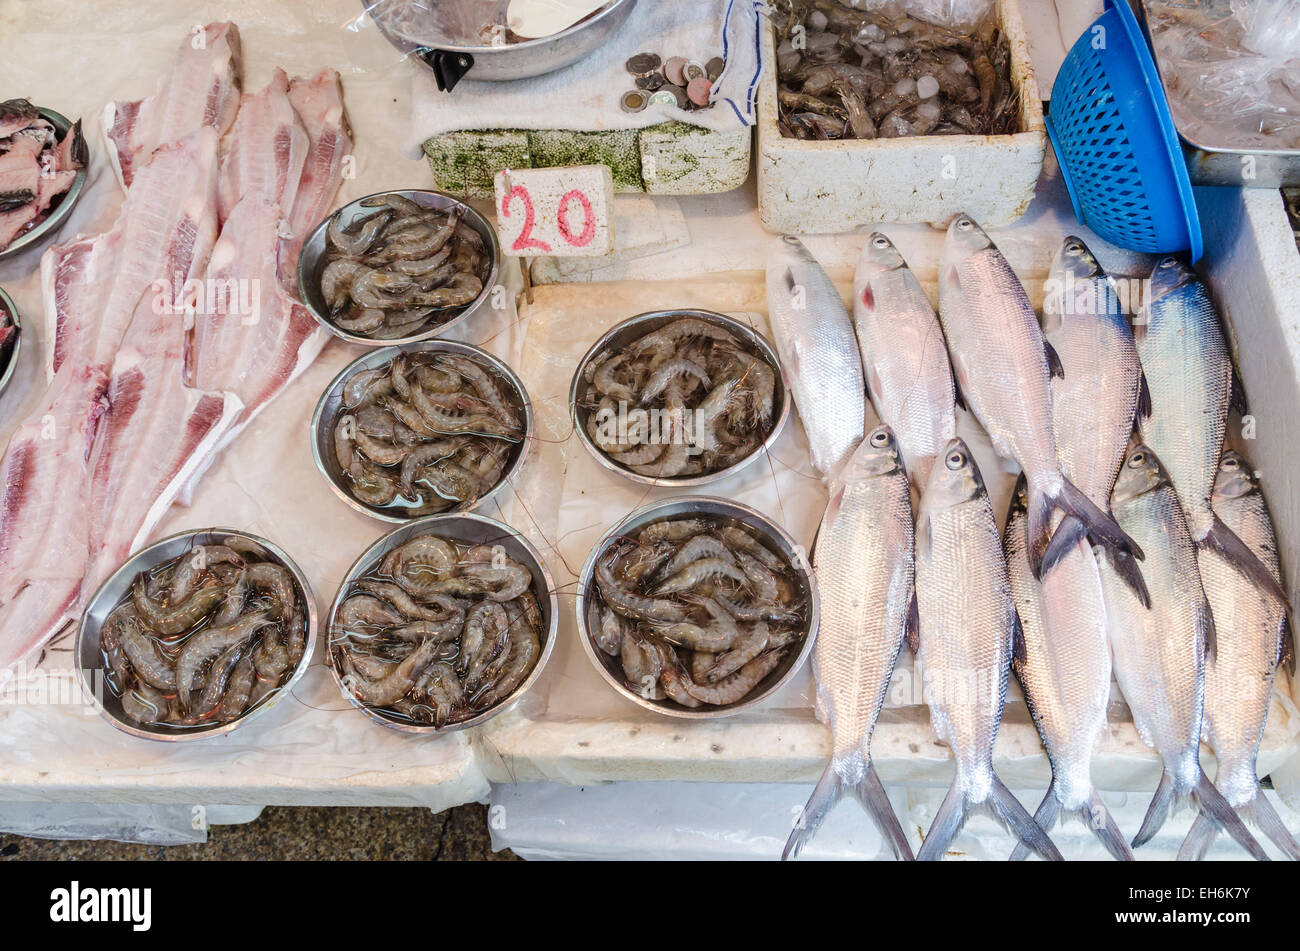 Dettaglio di pesce fresco e frutti di mare in negozio per i vicoli del centro, isola di Hong Kong, Hong Kong Foto Stock